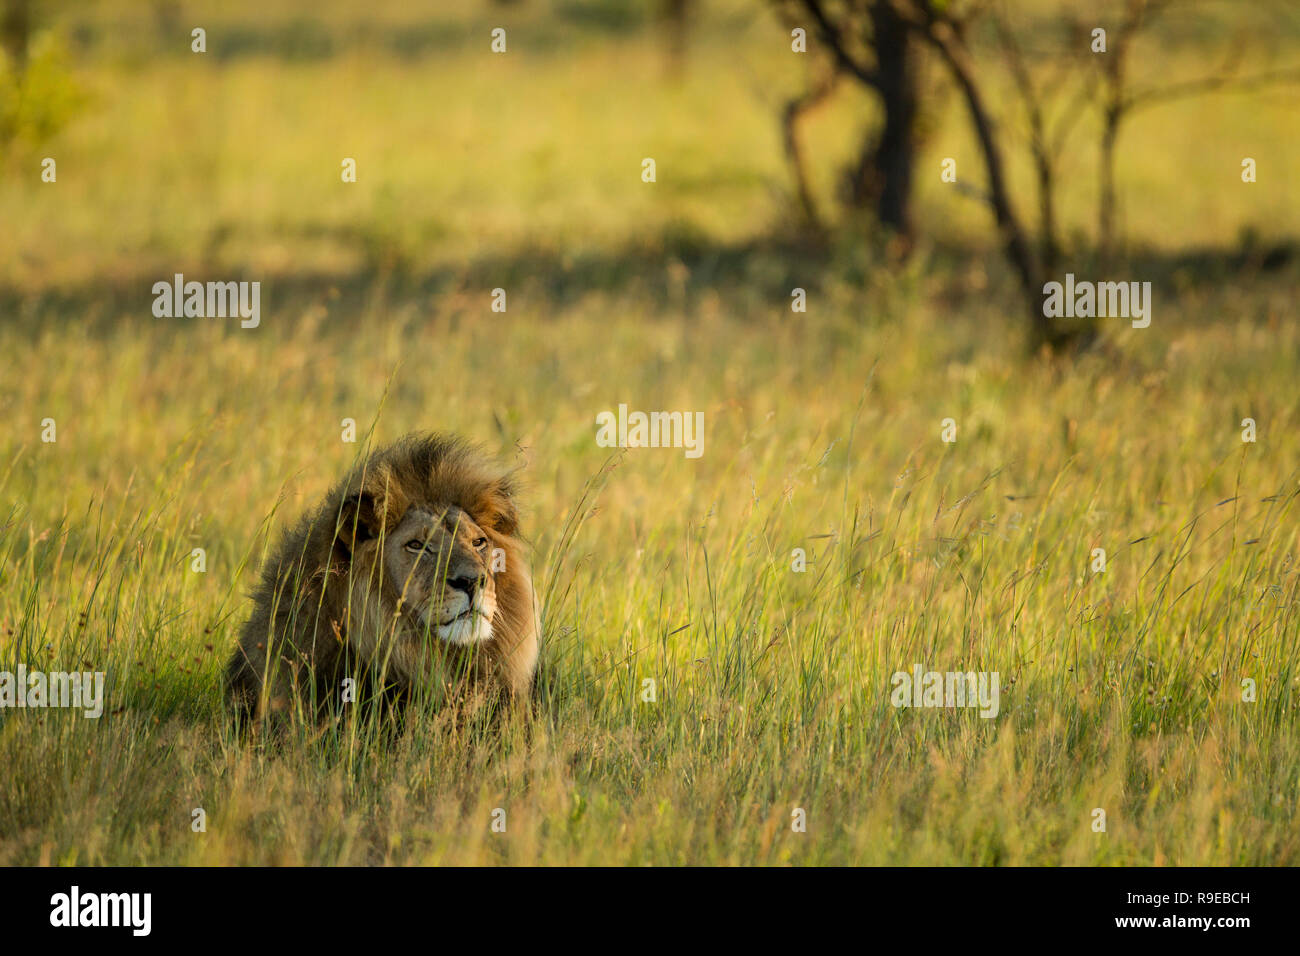 Riesige männliche Löwe im langen Gras in goldenem Licht liegen Stockfoto